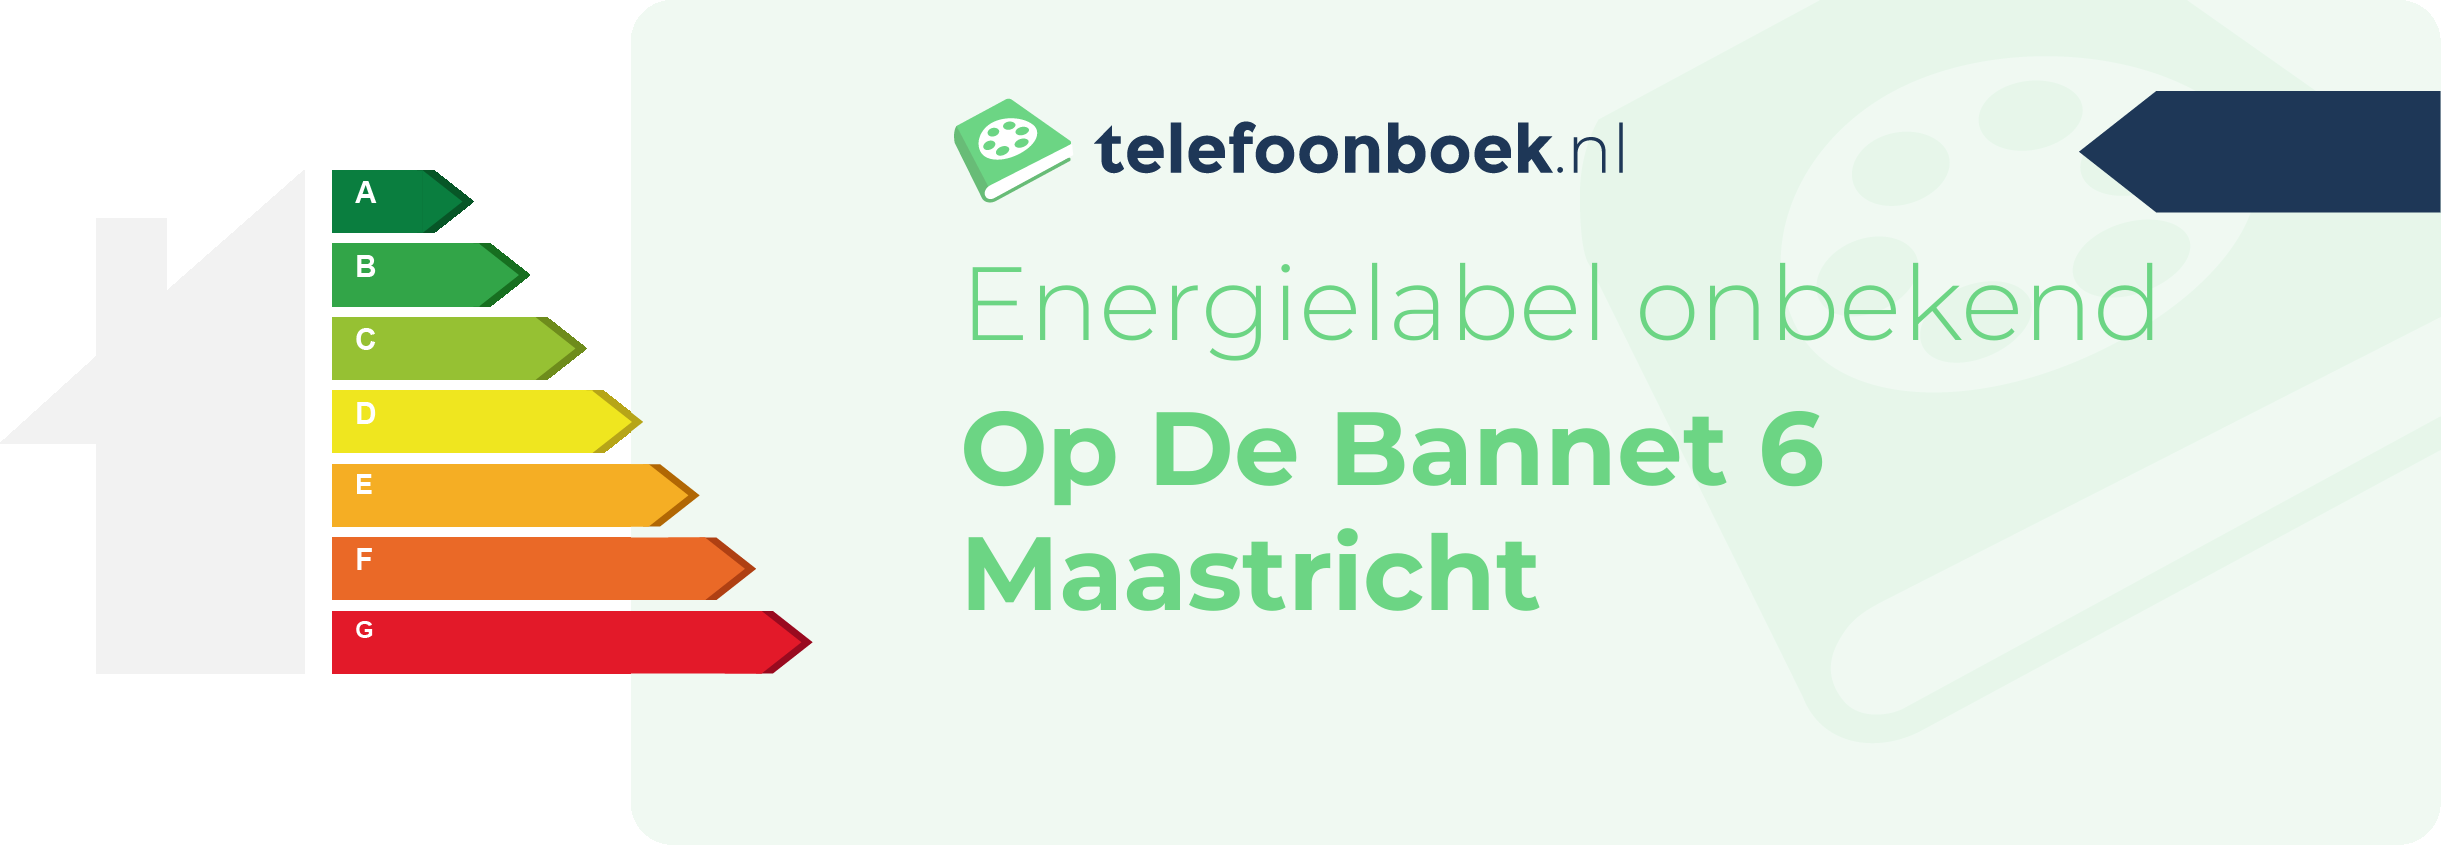 Energielabel Op De Bannet 6 Maastricht